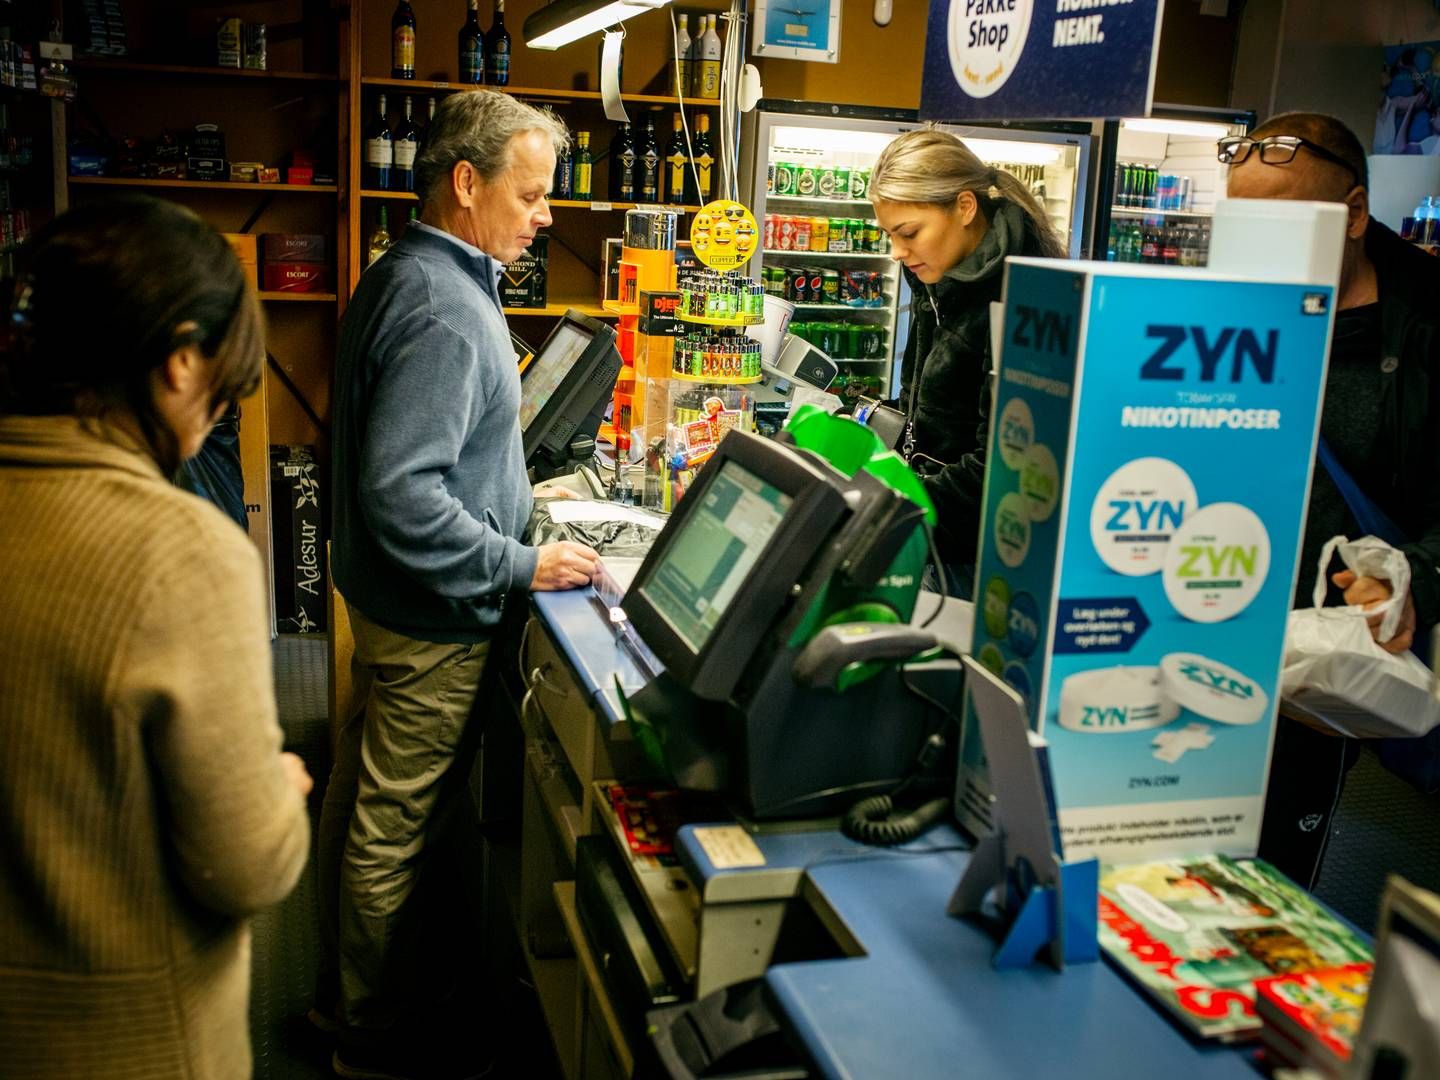 Norsk-ejede Bring søger nu flere pakkeshops, efter Postnord har skåret 200 butikker fra i | Foto: Jens Hartmann